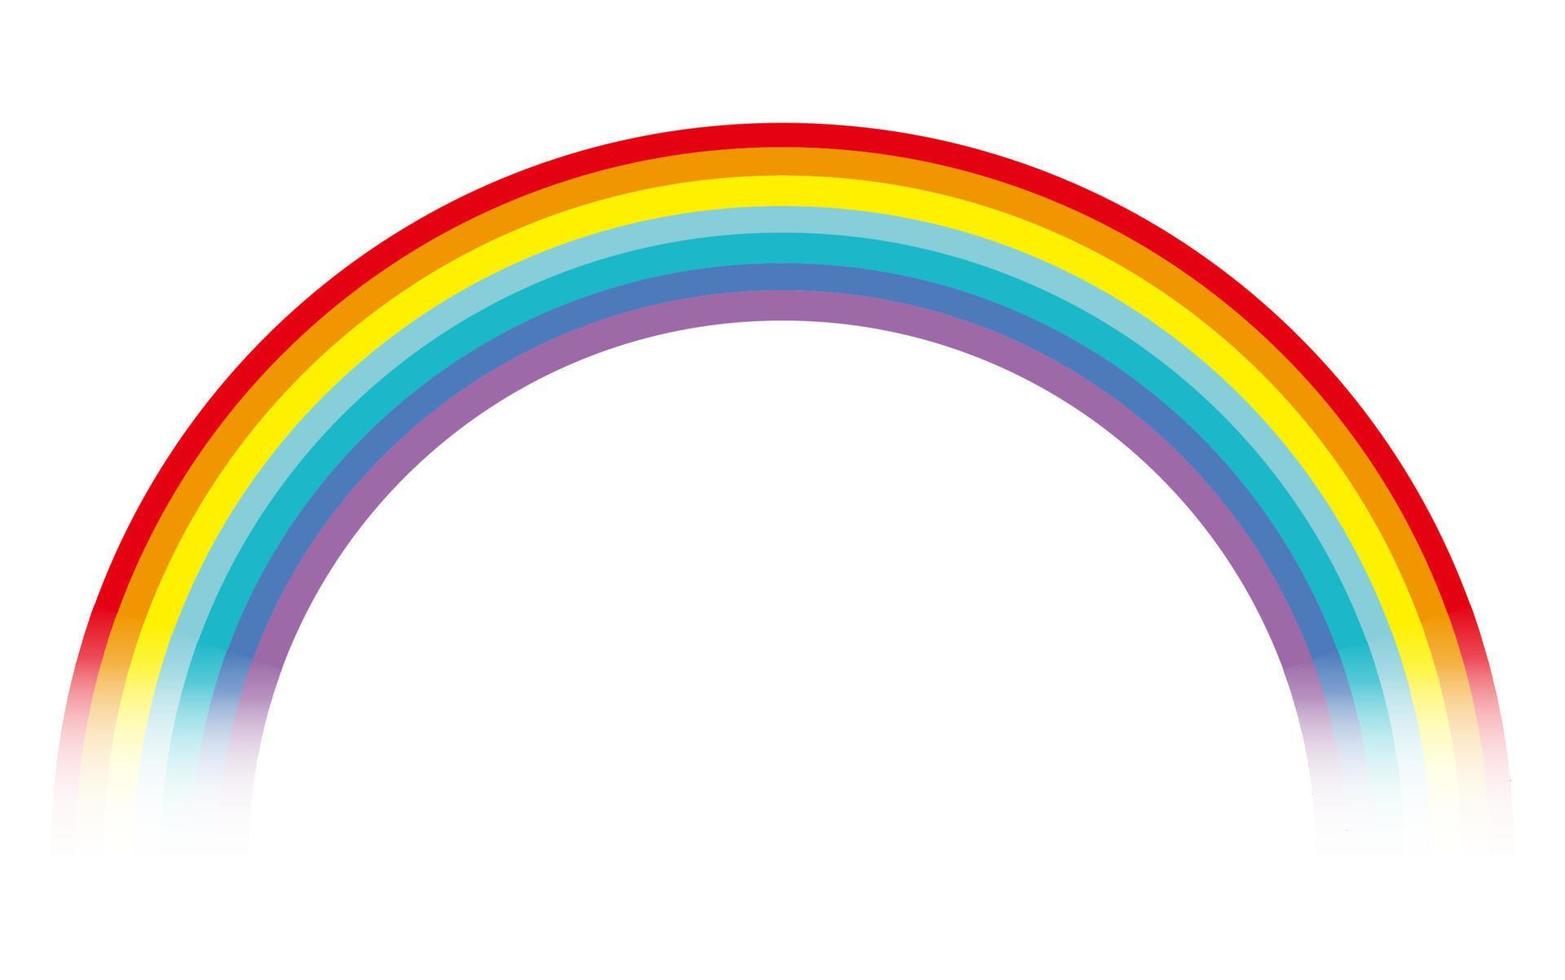 vektor färgrik regnbåge illustration isolerat på en vit bakgrund.